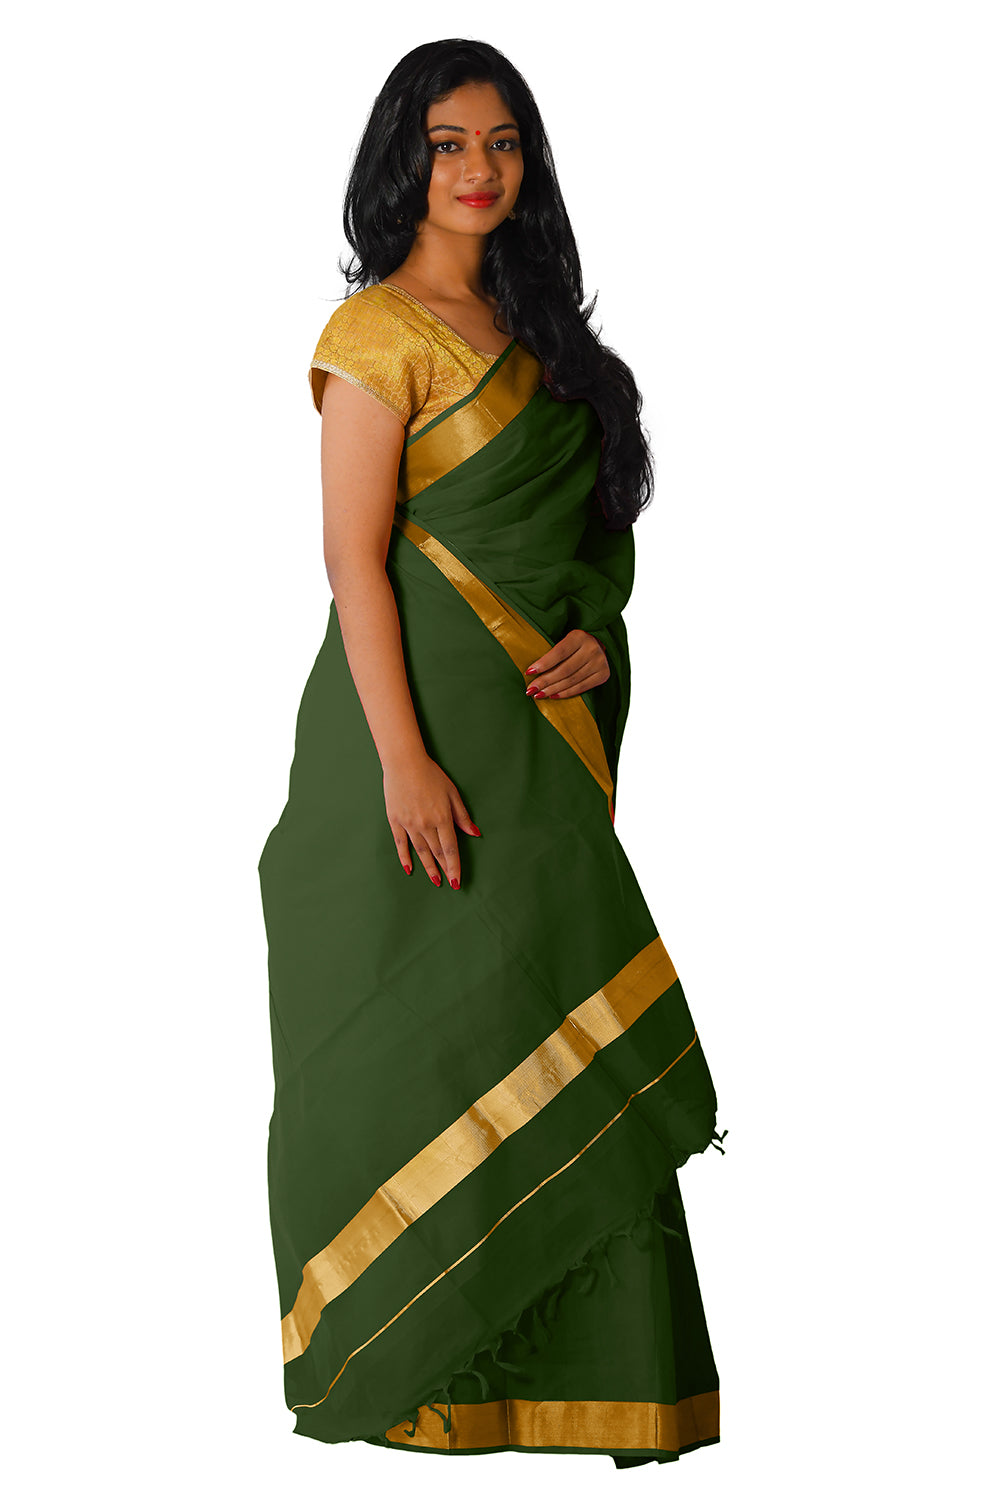 Kerala Traditional Dark Green Colour Kasavu Saree